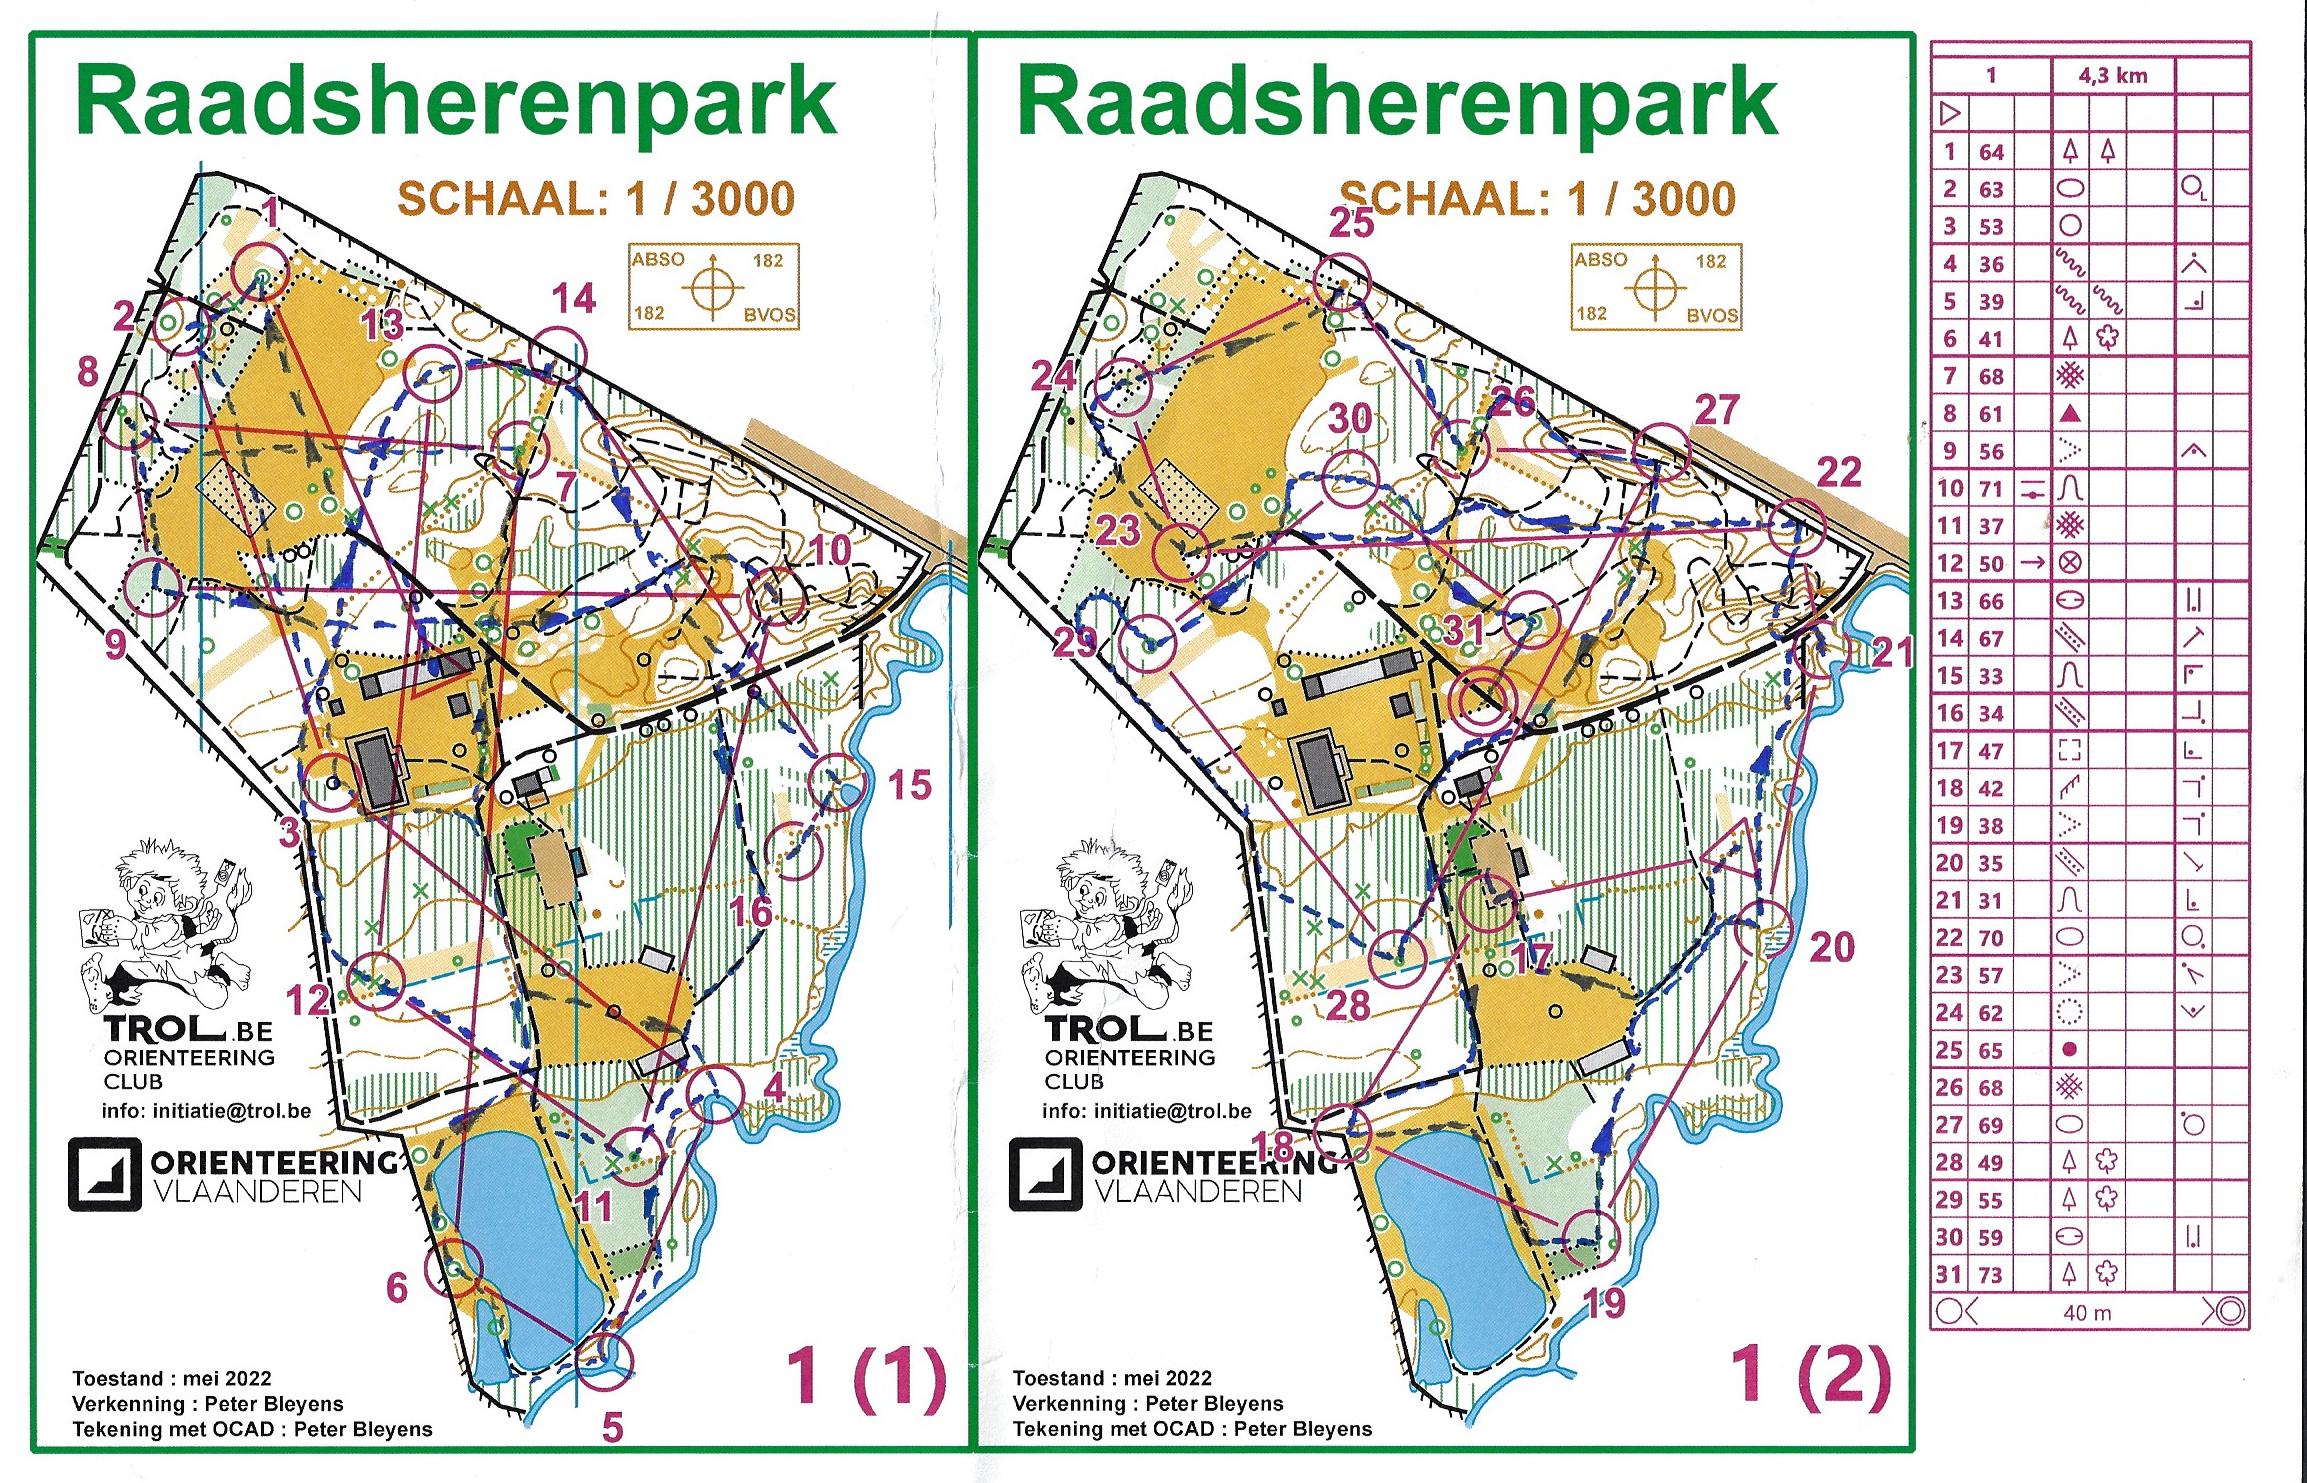 Raadsherenpark (18/05/2022)